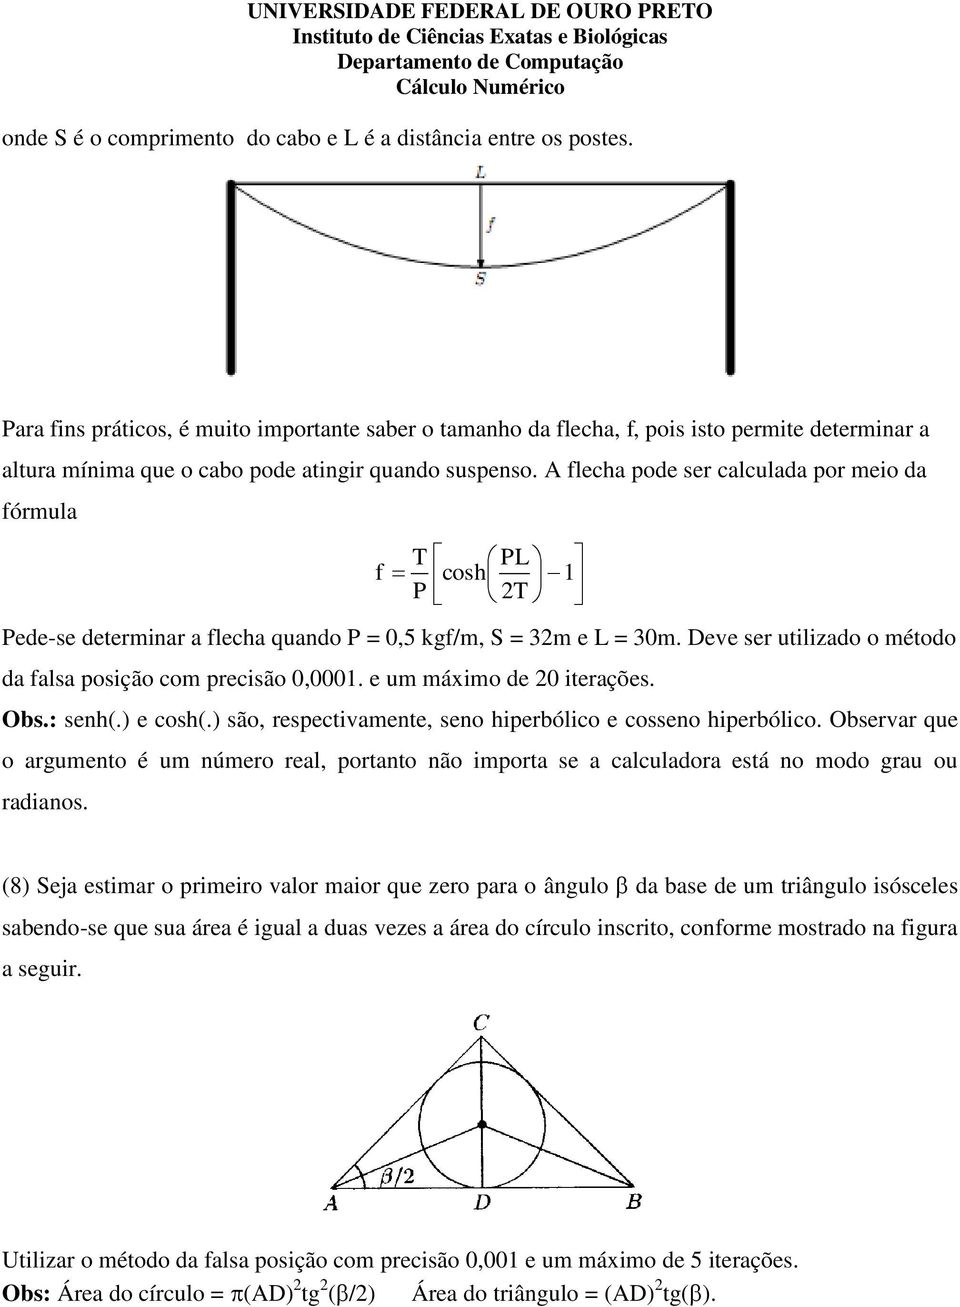 A flecha pode ser calculada por meio da fórmula T PL f cosh 1 P 2T Pede-se determinar a flecha quando P = 0,5 kgf/m, S = 32m e L = 30m.